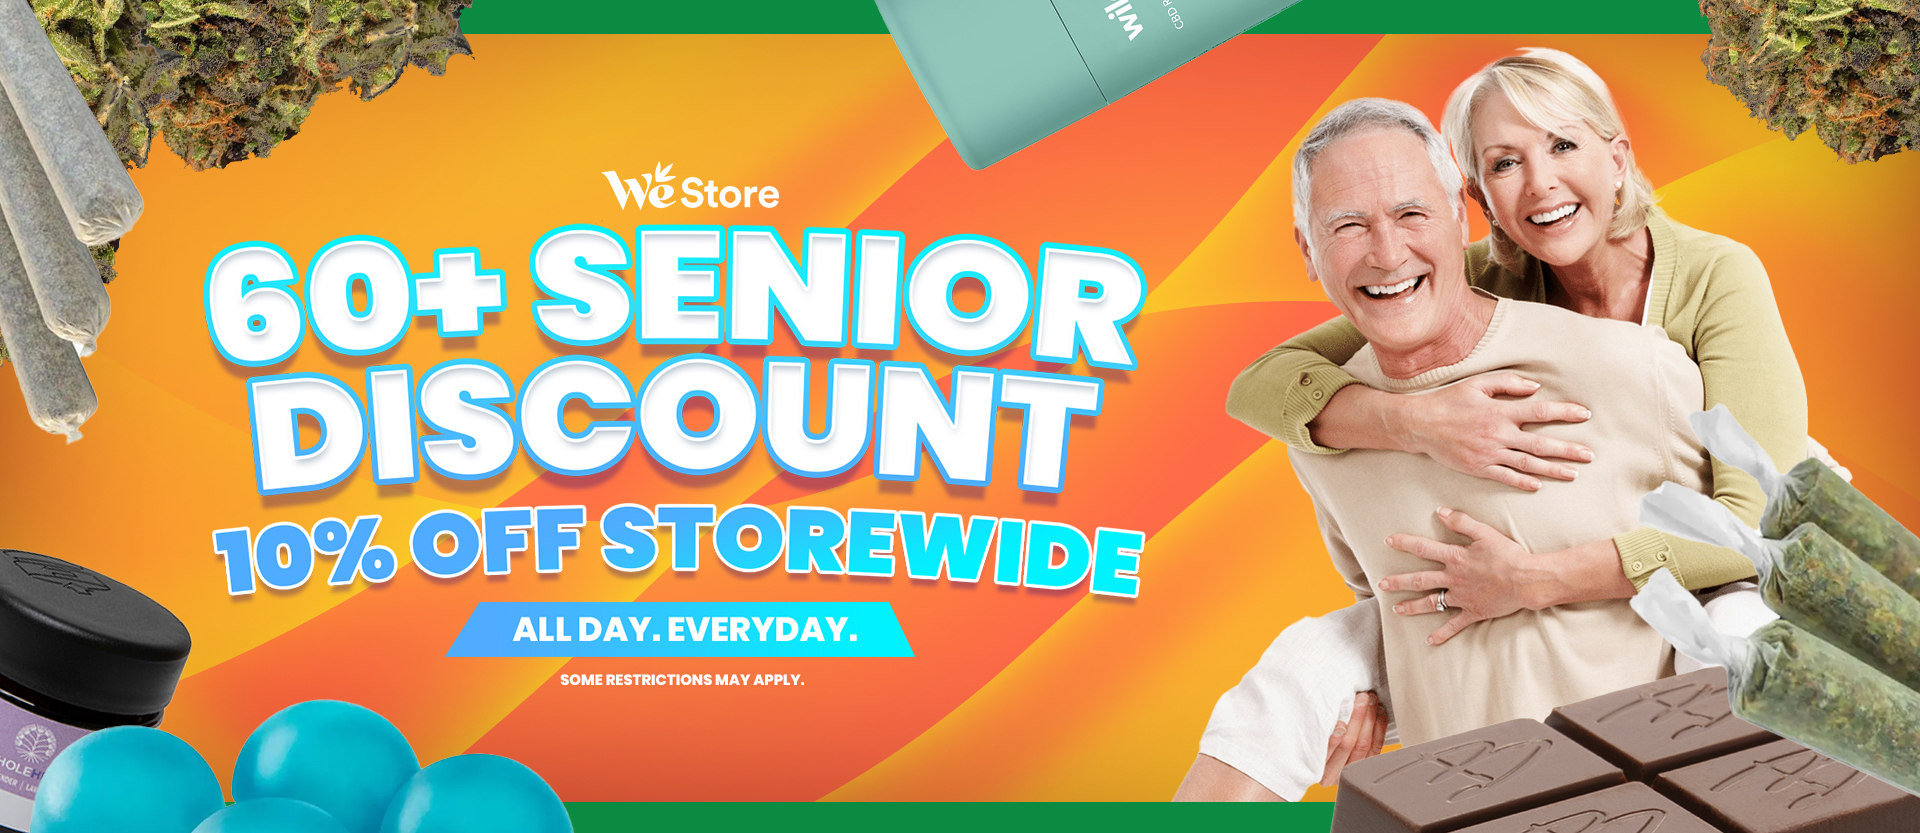 60+ Senior Discount - 10% Off Storewide